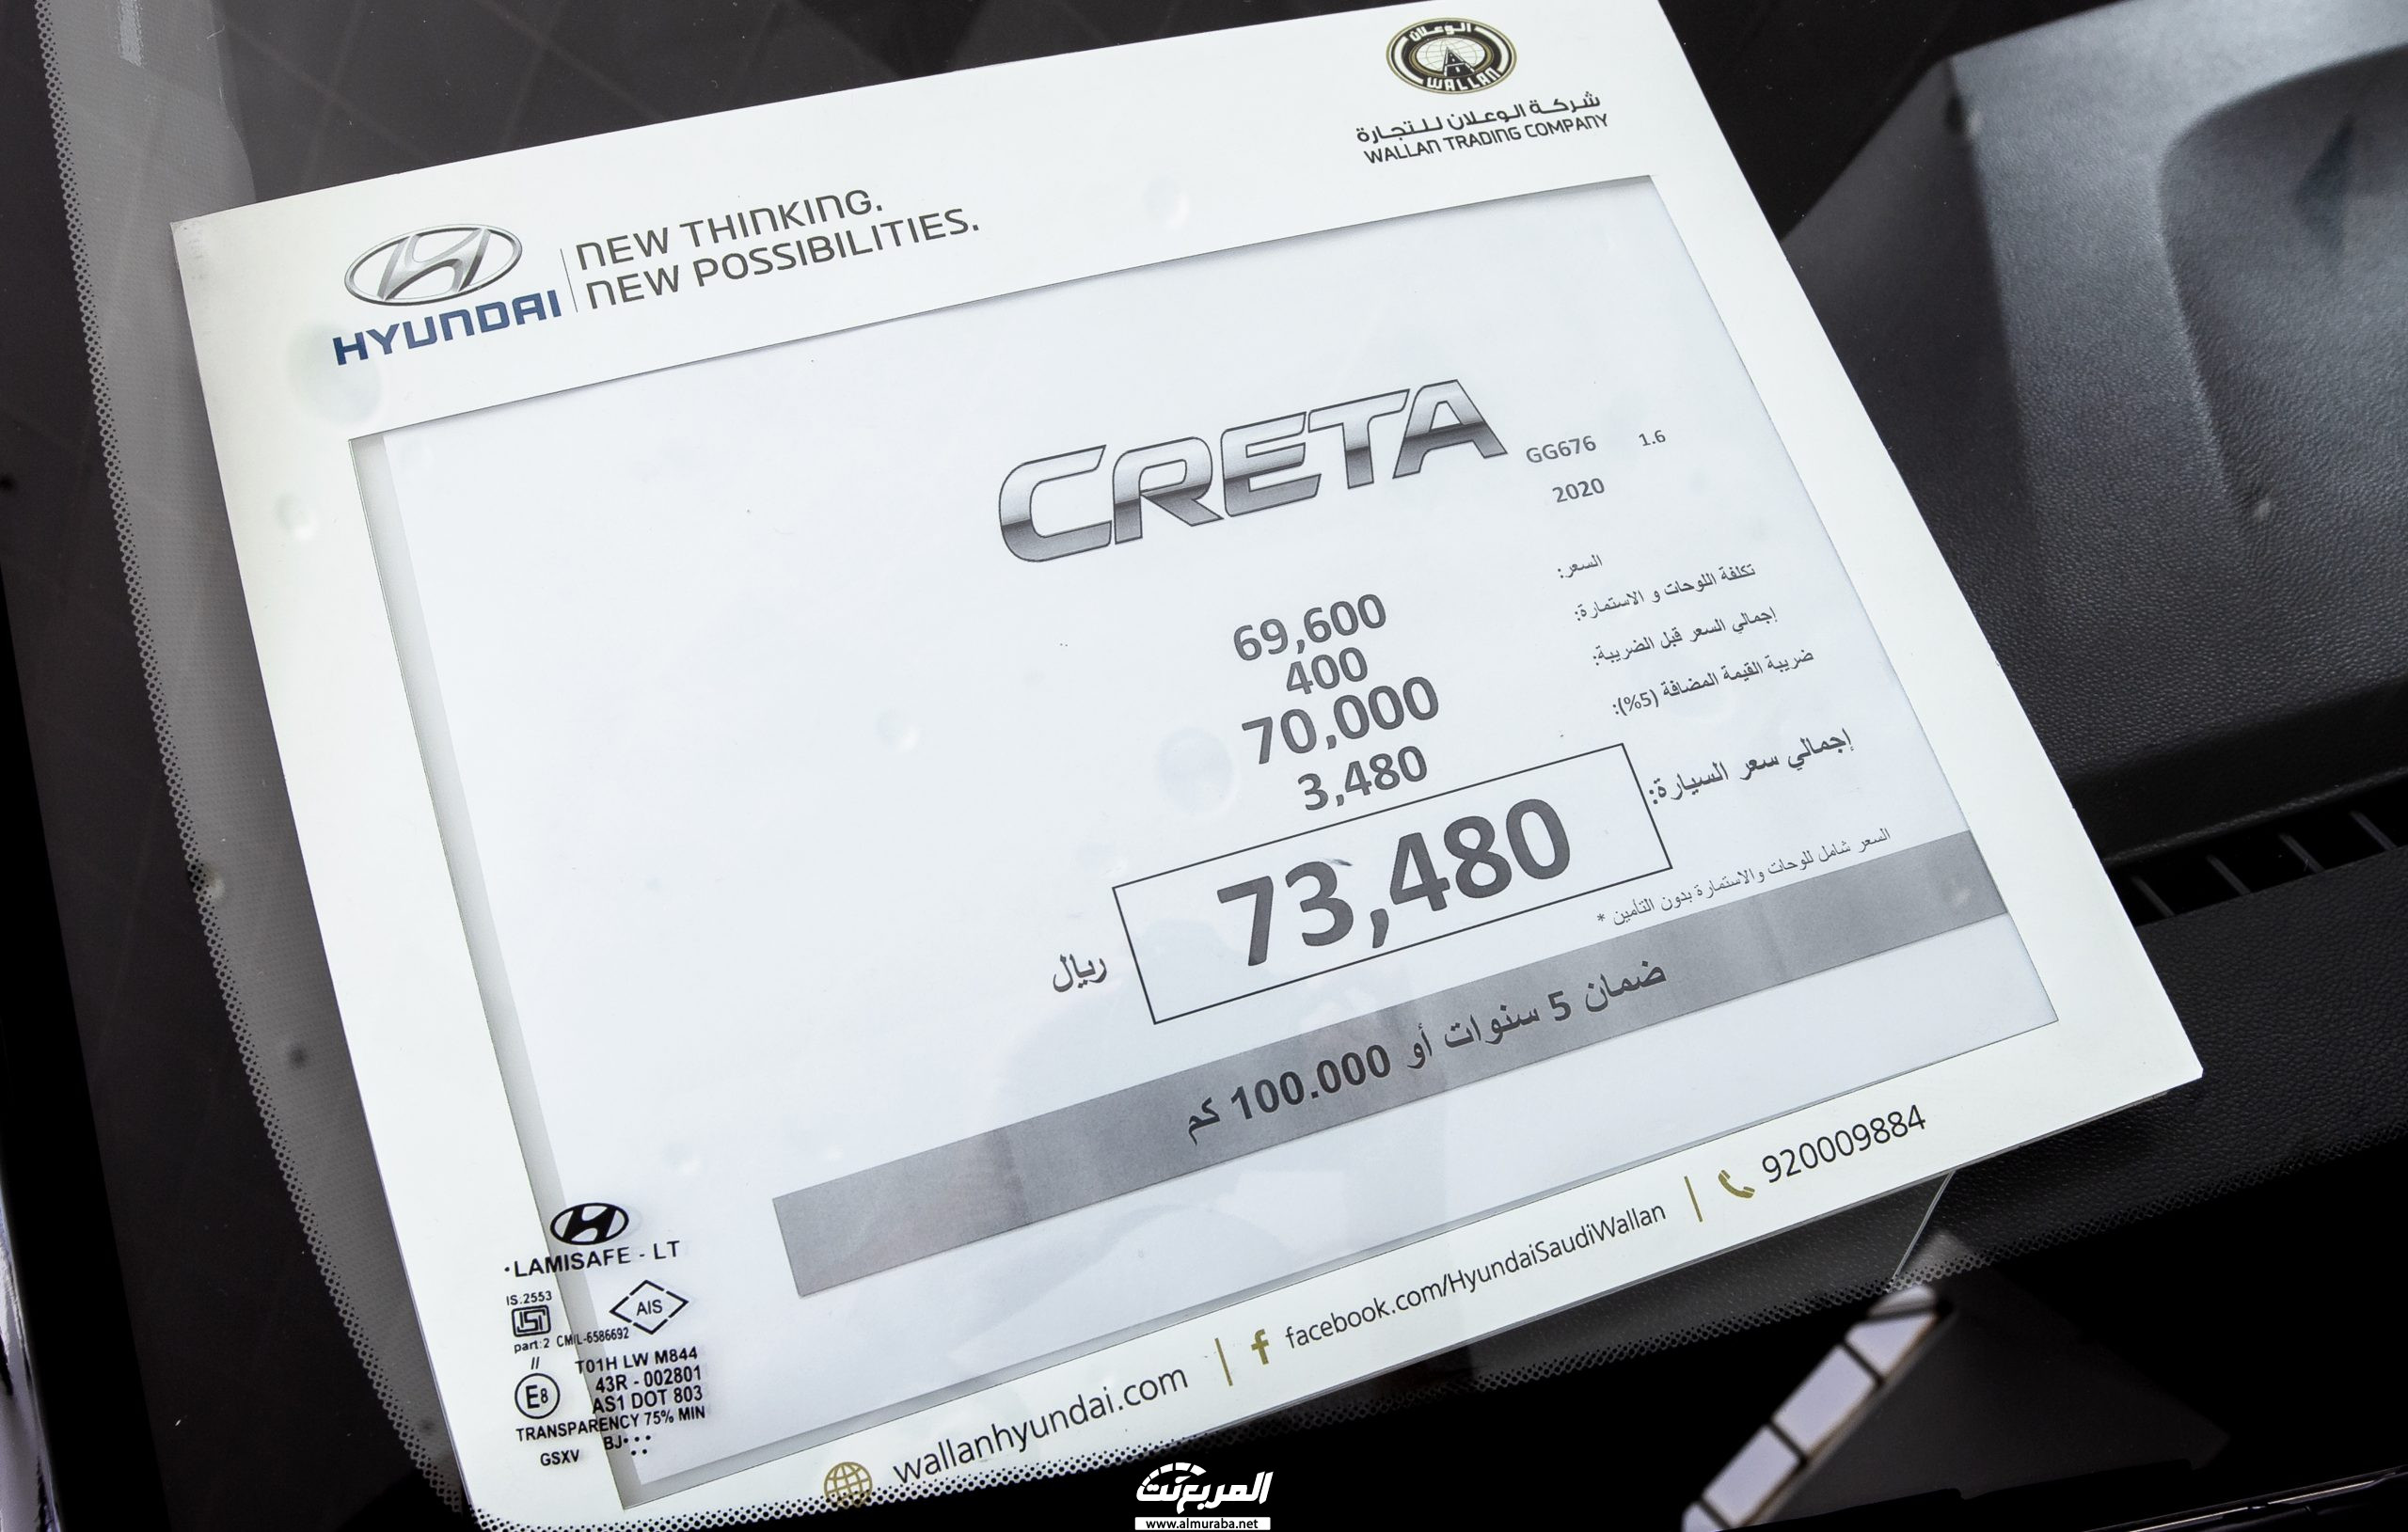 اسعار هيونداي كريتا 2020 في السعودية Hyundai Creta 40